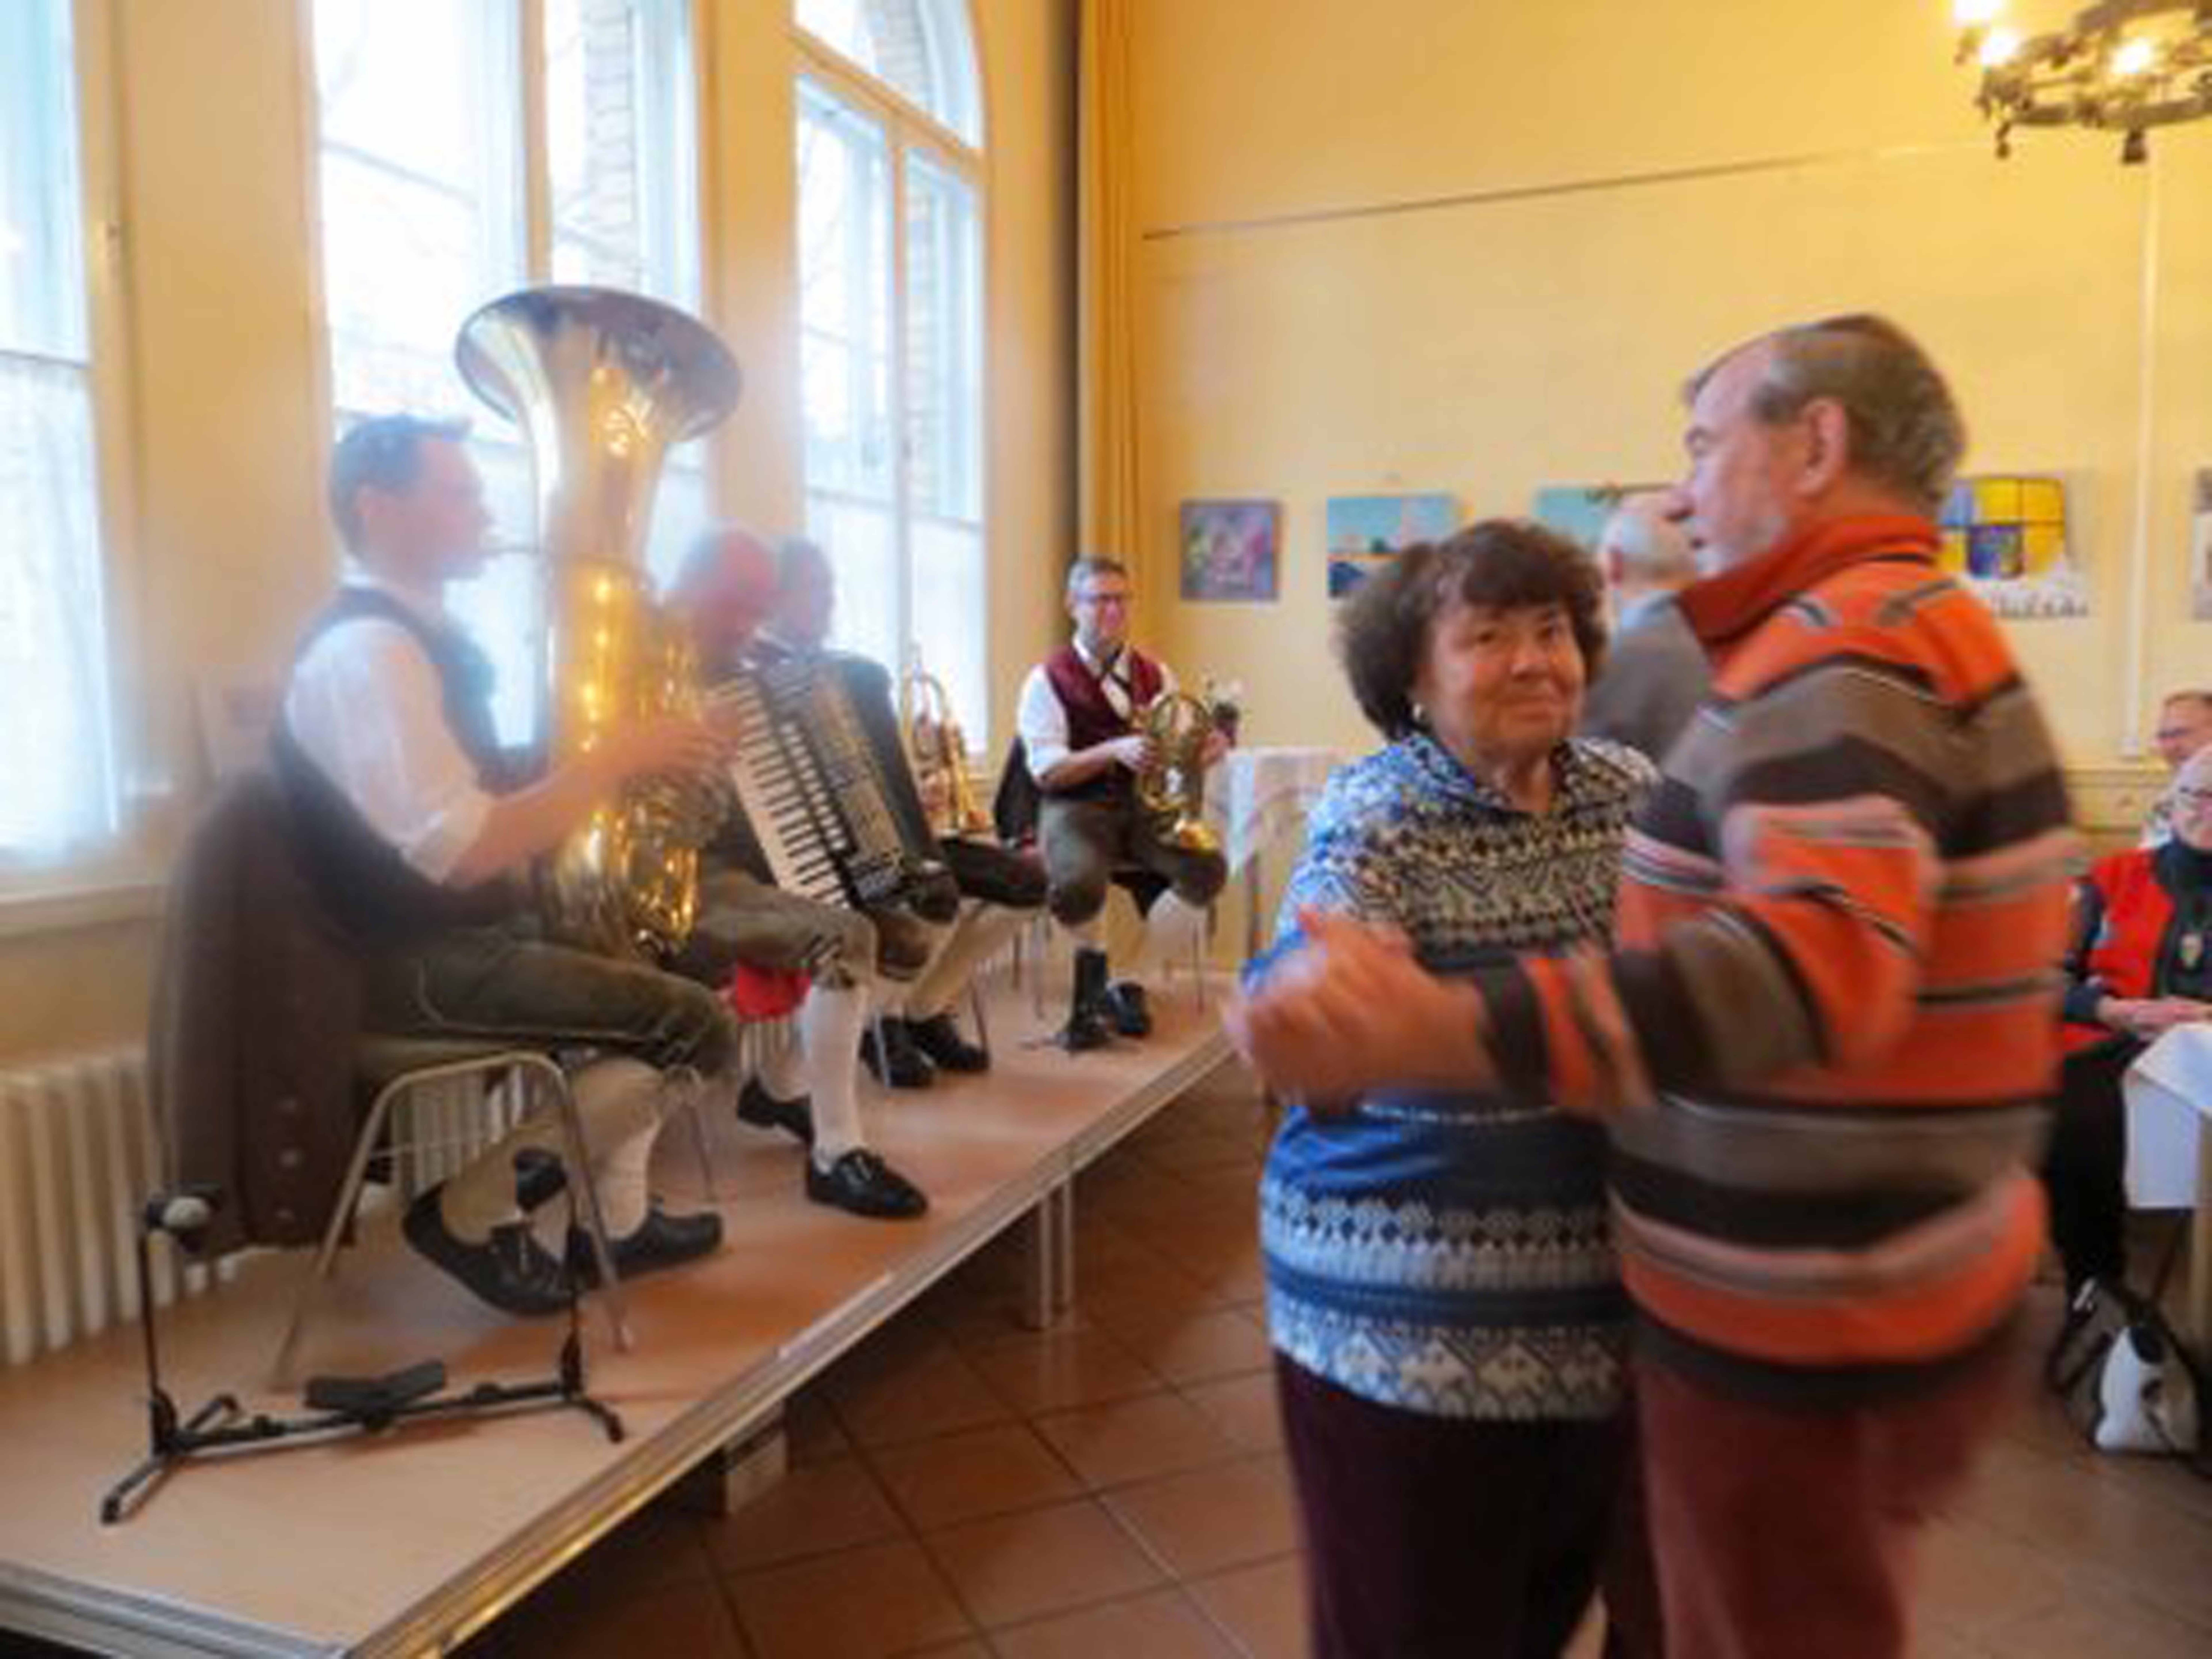 Blasmusik, Radi und gute Stimmung beim Bayerischen Nachmittag im Kulturbahnhof am 25.01.2017